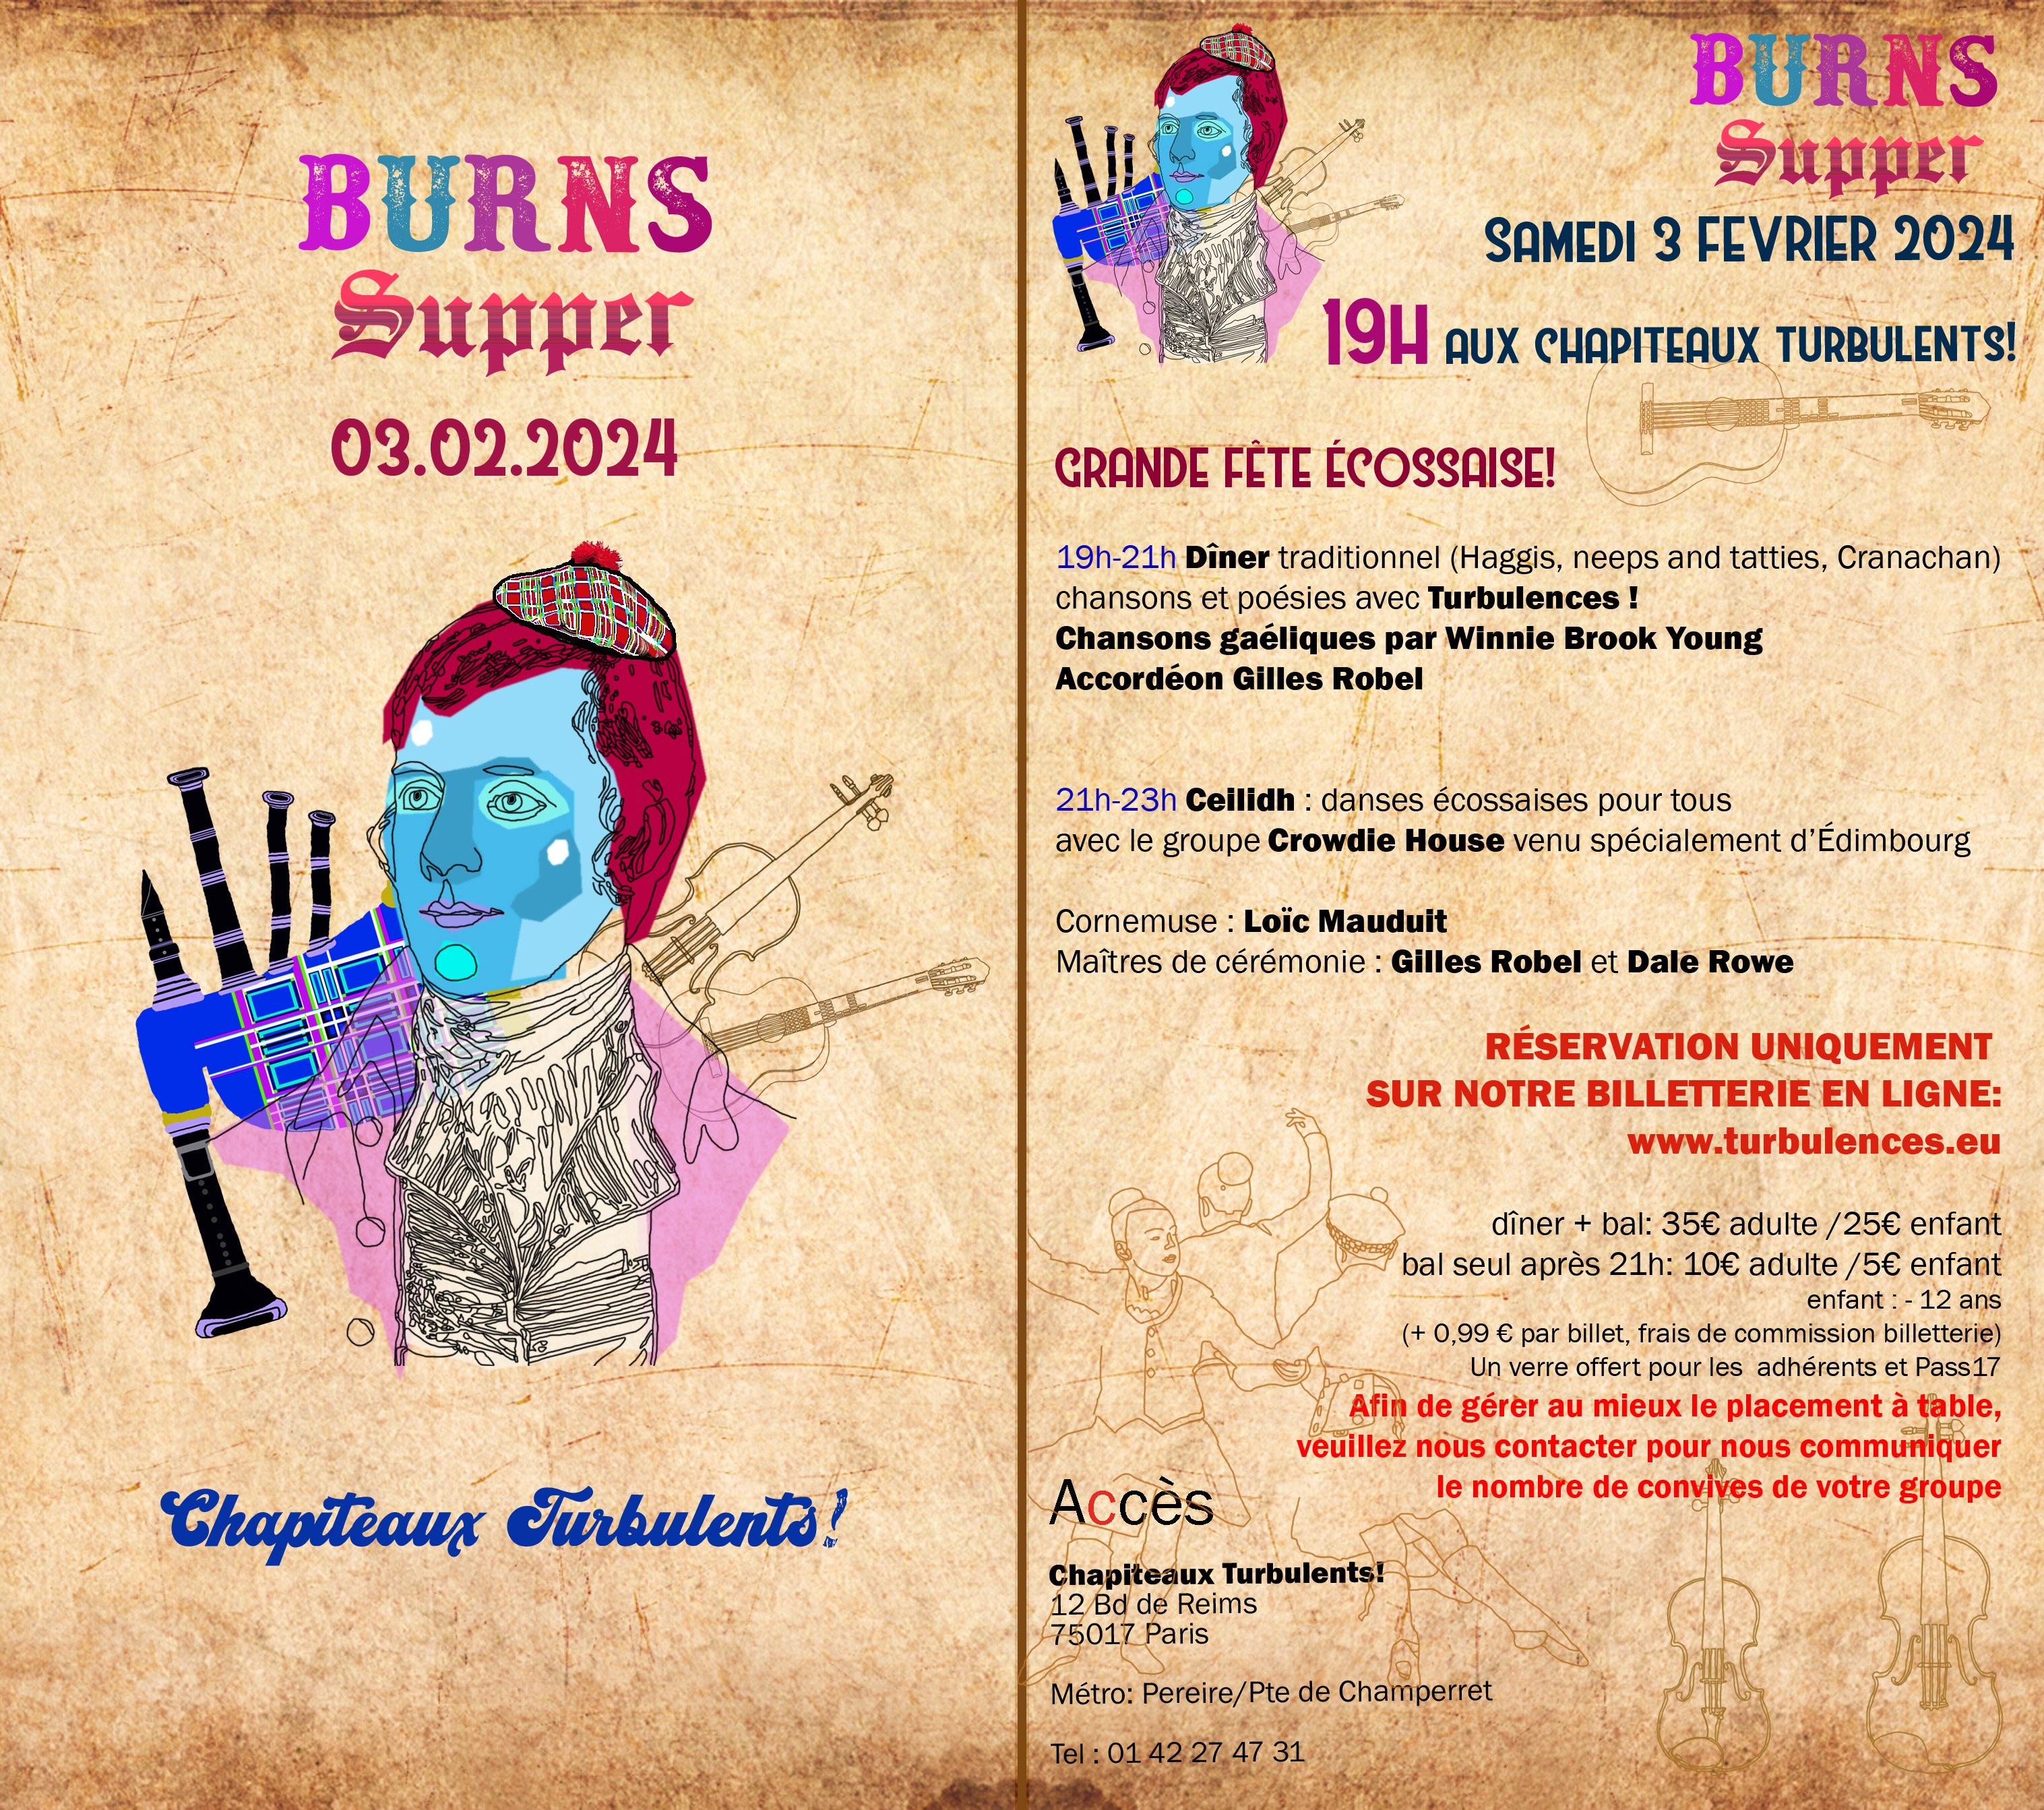 Burns Supper Samedi 3 février 2024 aux Chapiteaux Turbulents!, 12, boulevard de Reims, 75017 PARIS